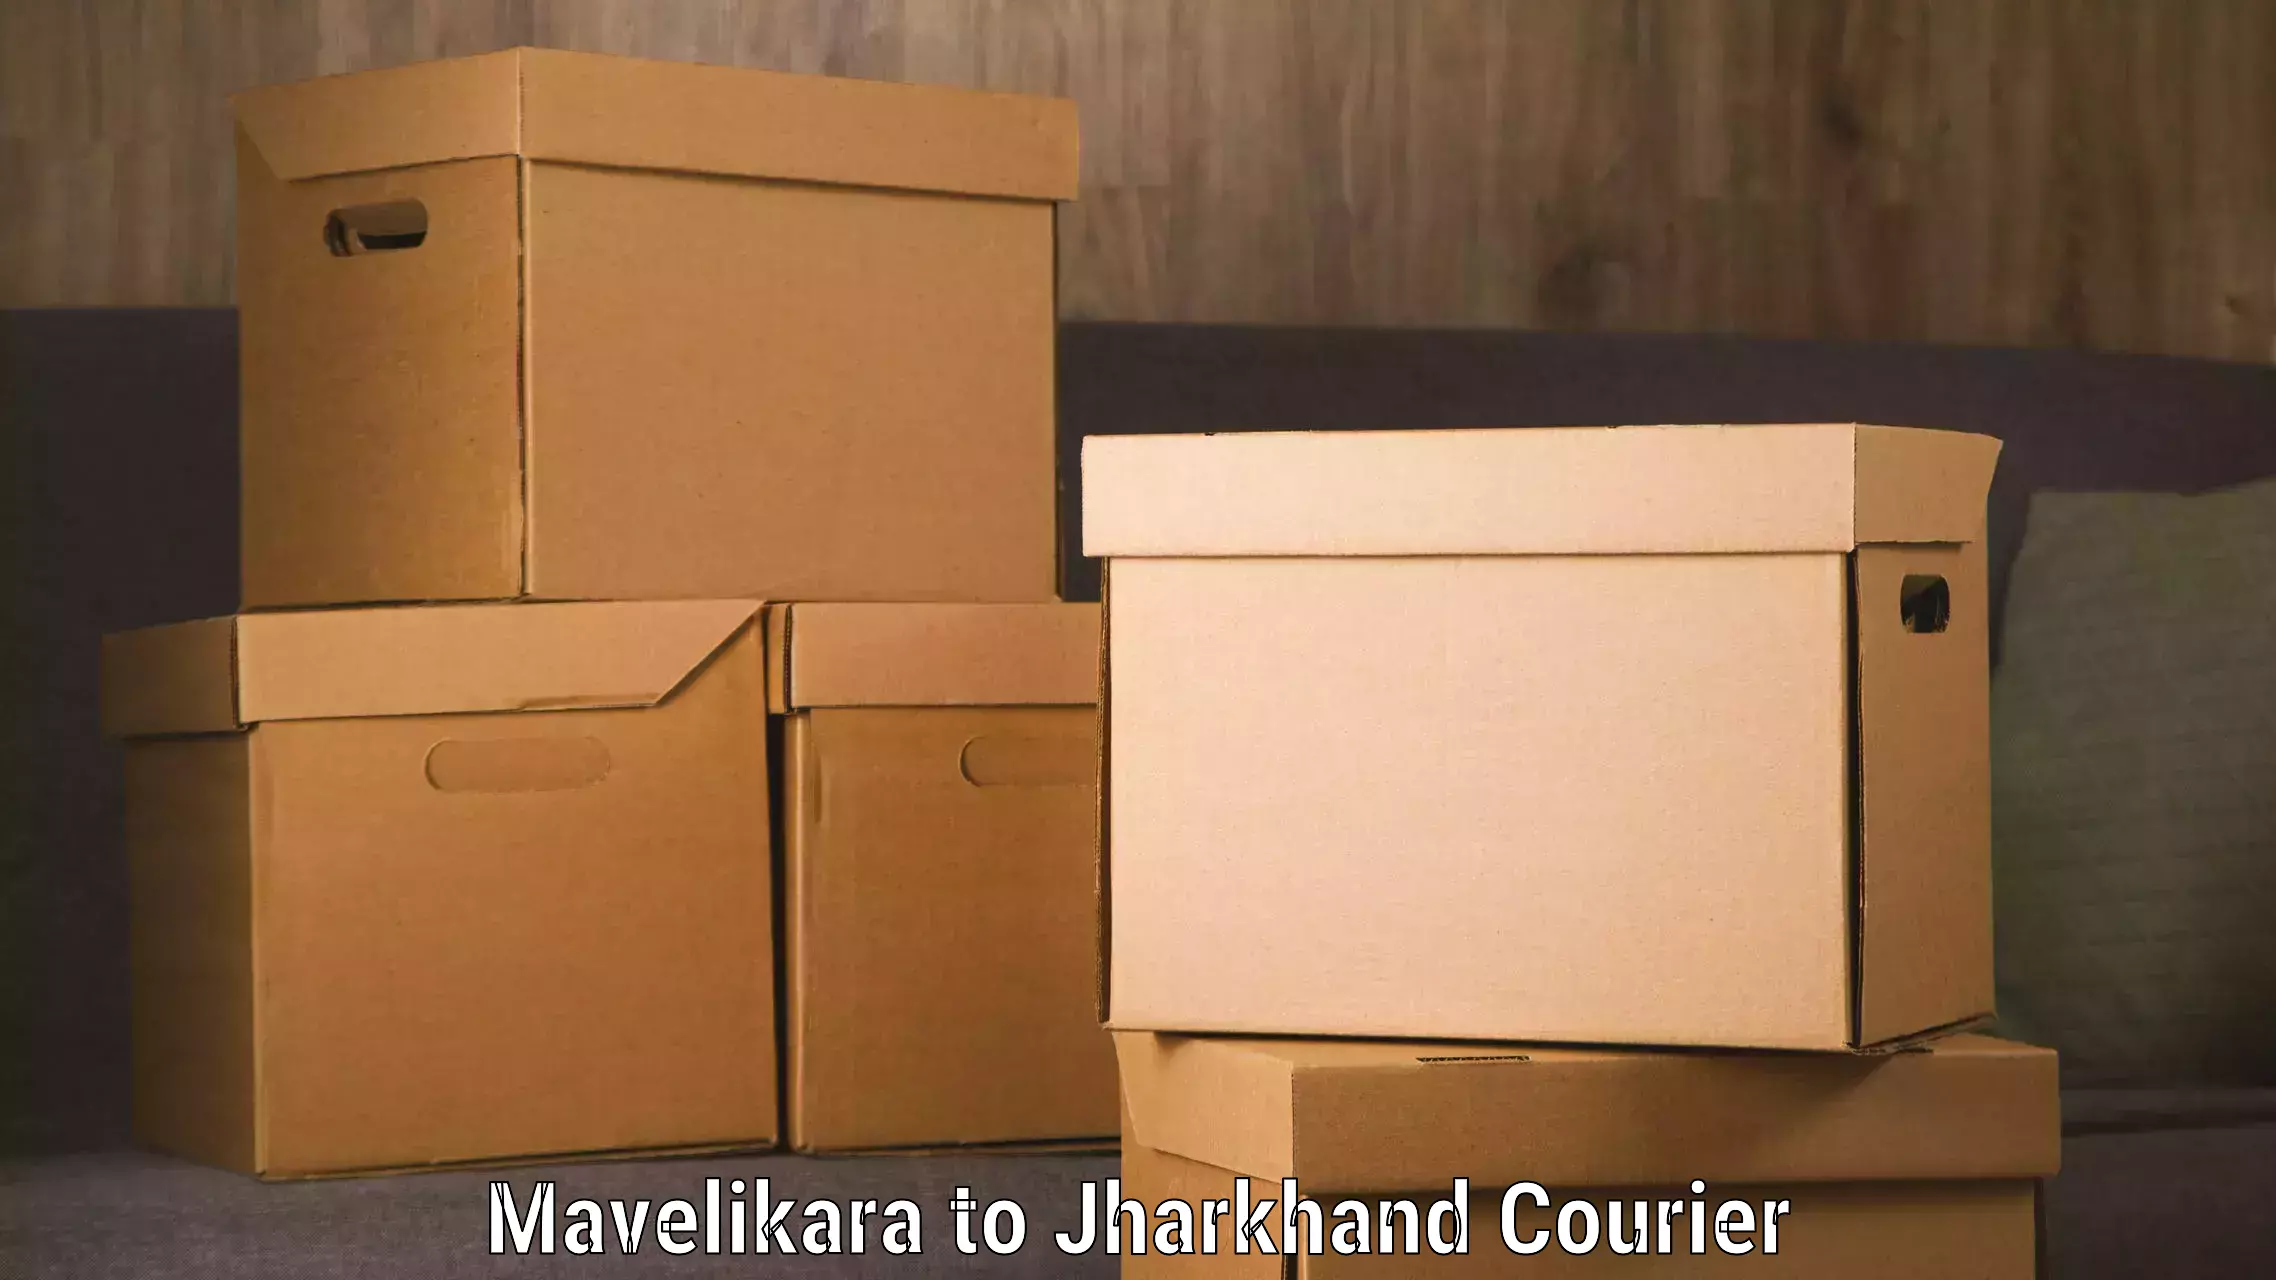 Full-service courier options Mavelikara to Mahagama